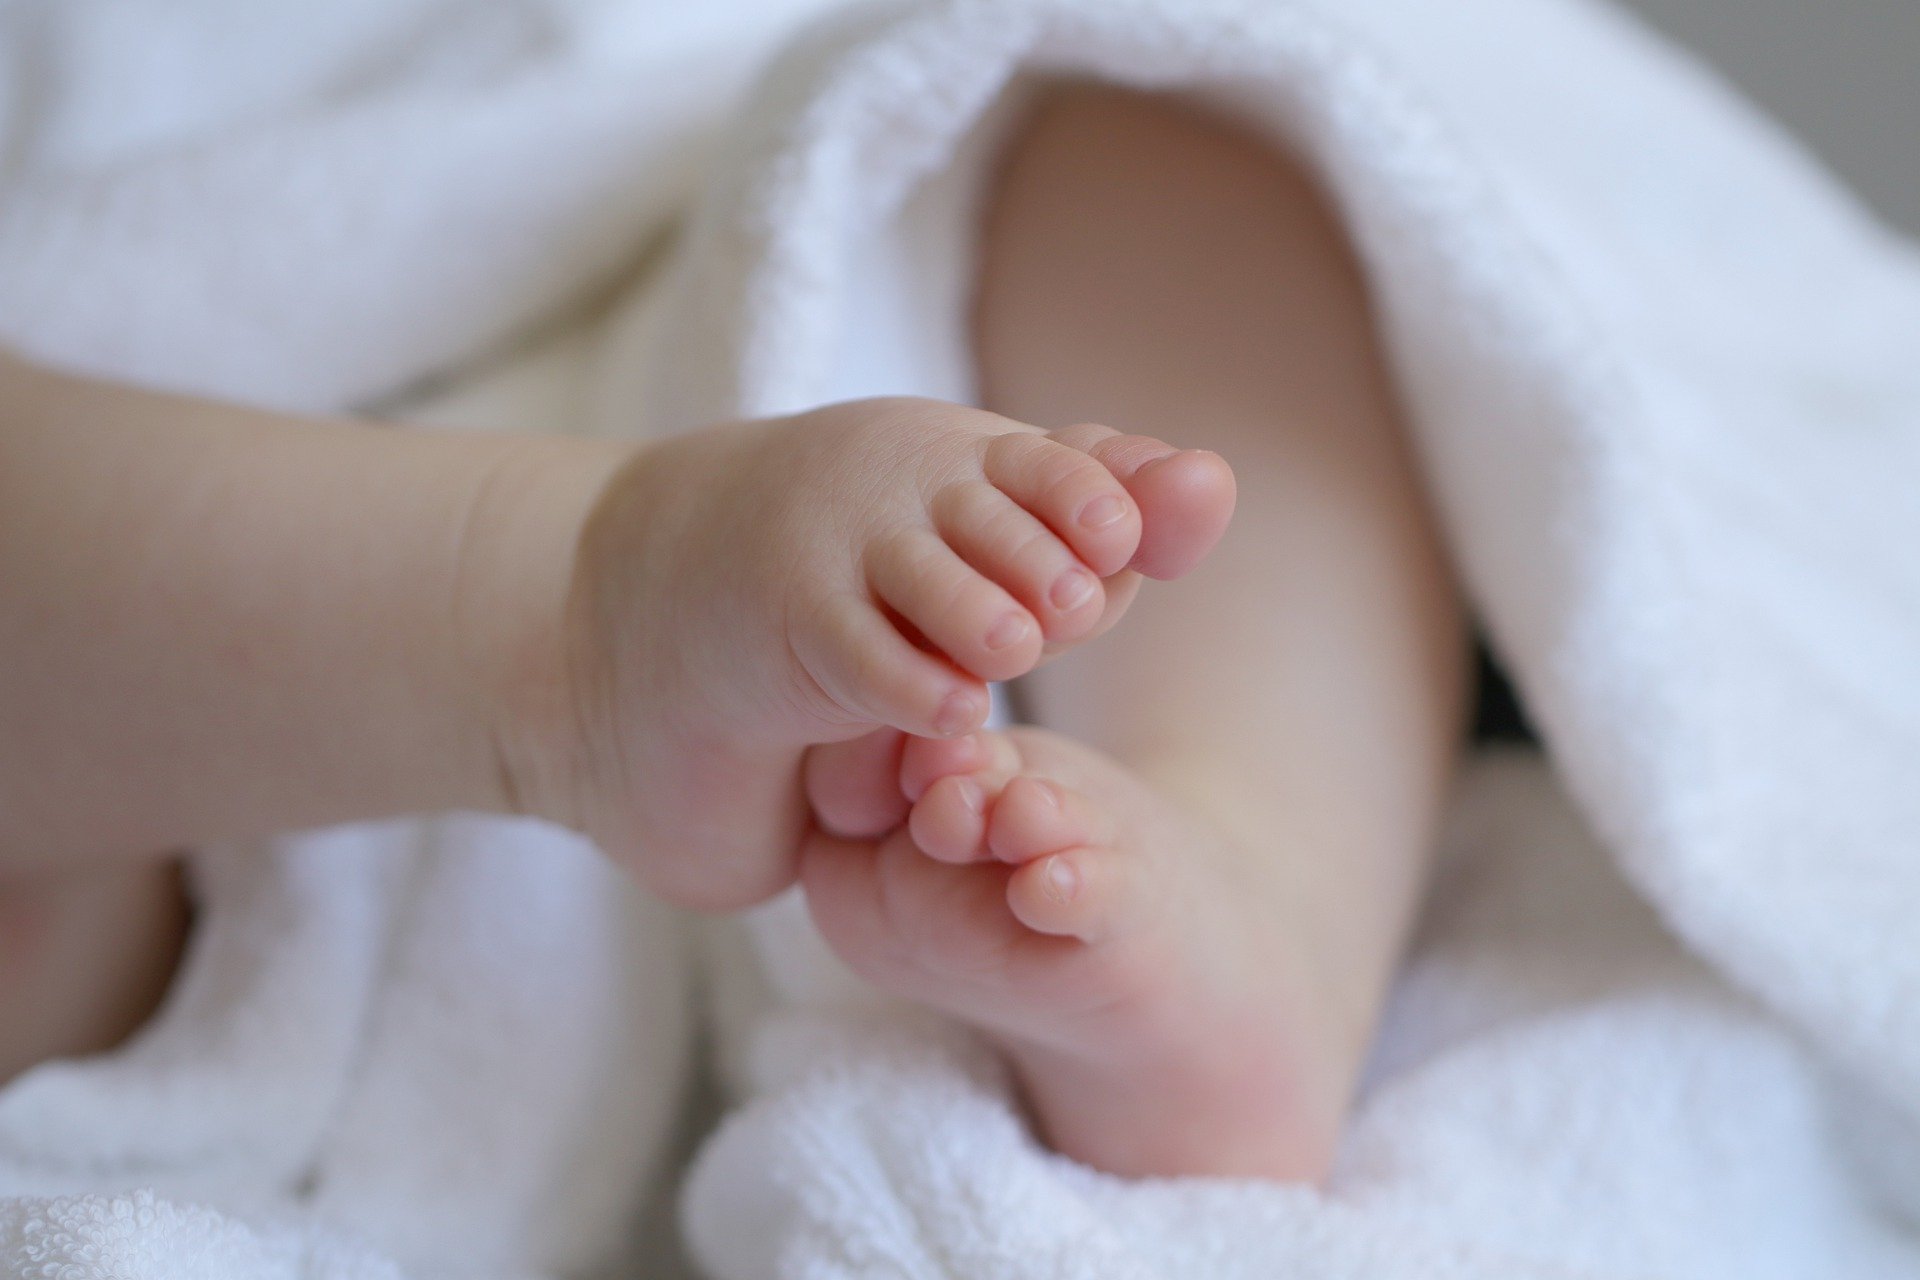 حركات الرضيع الغير طبيعية دلالات ومخاطر